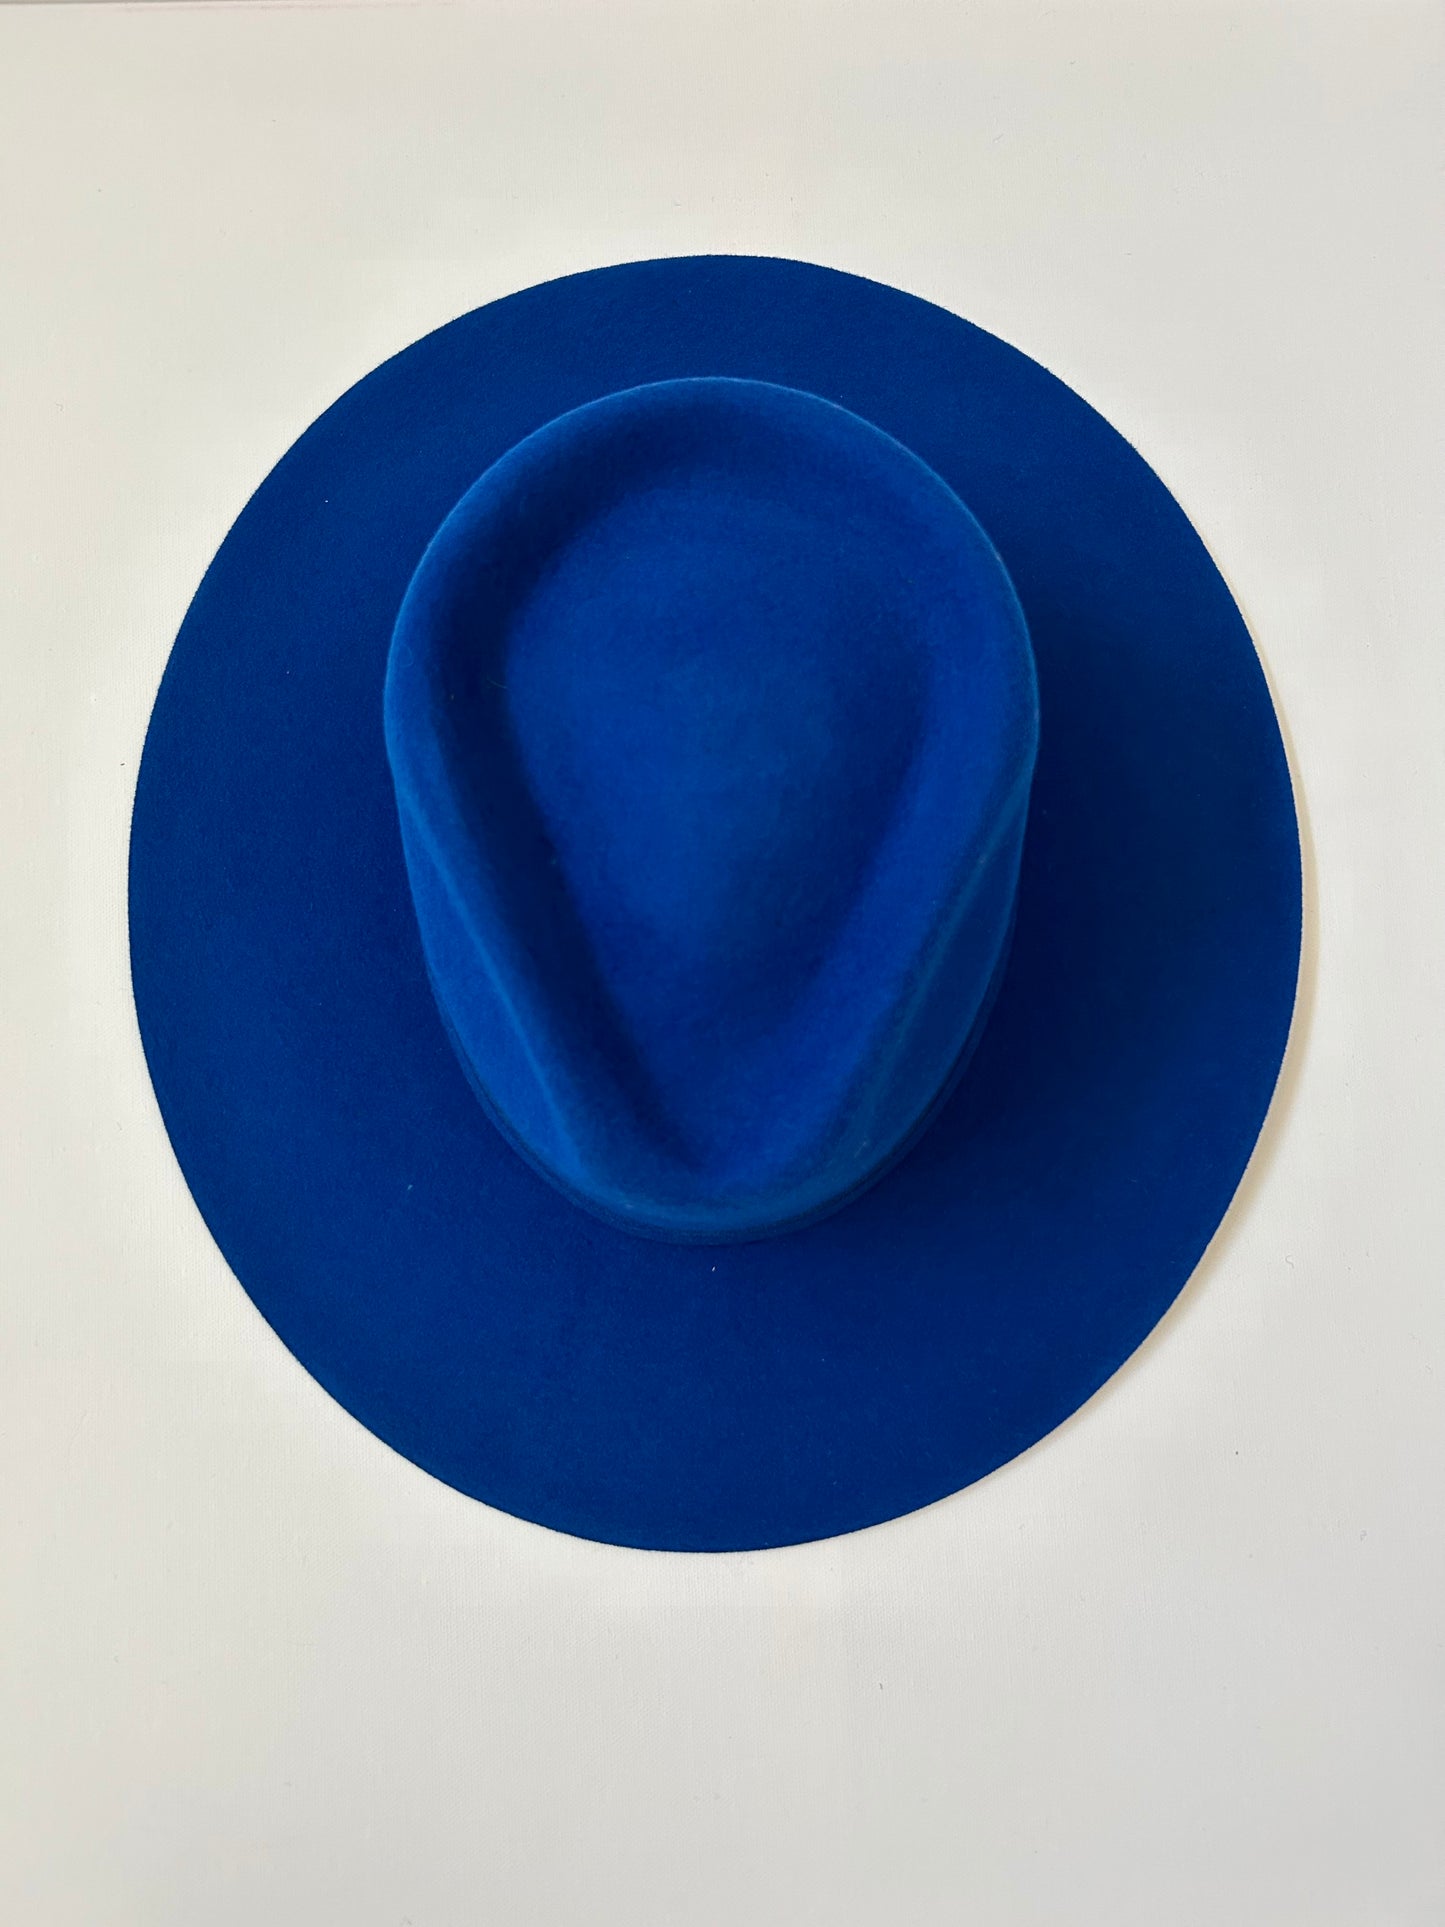 Emery Merino Wool Teardrop Rancher Hat - Royal Blue